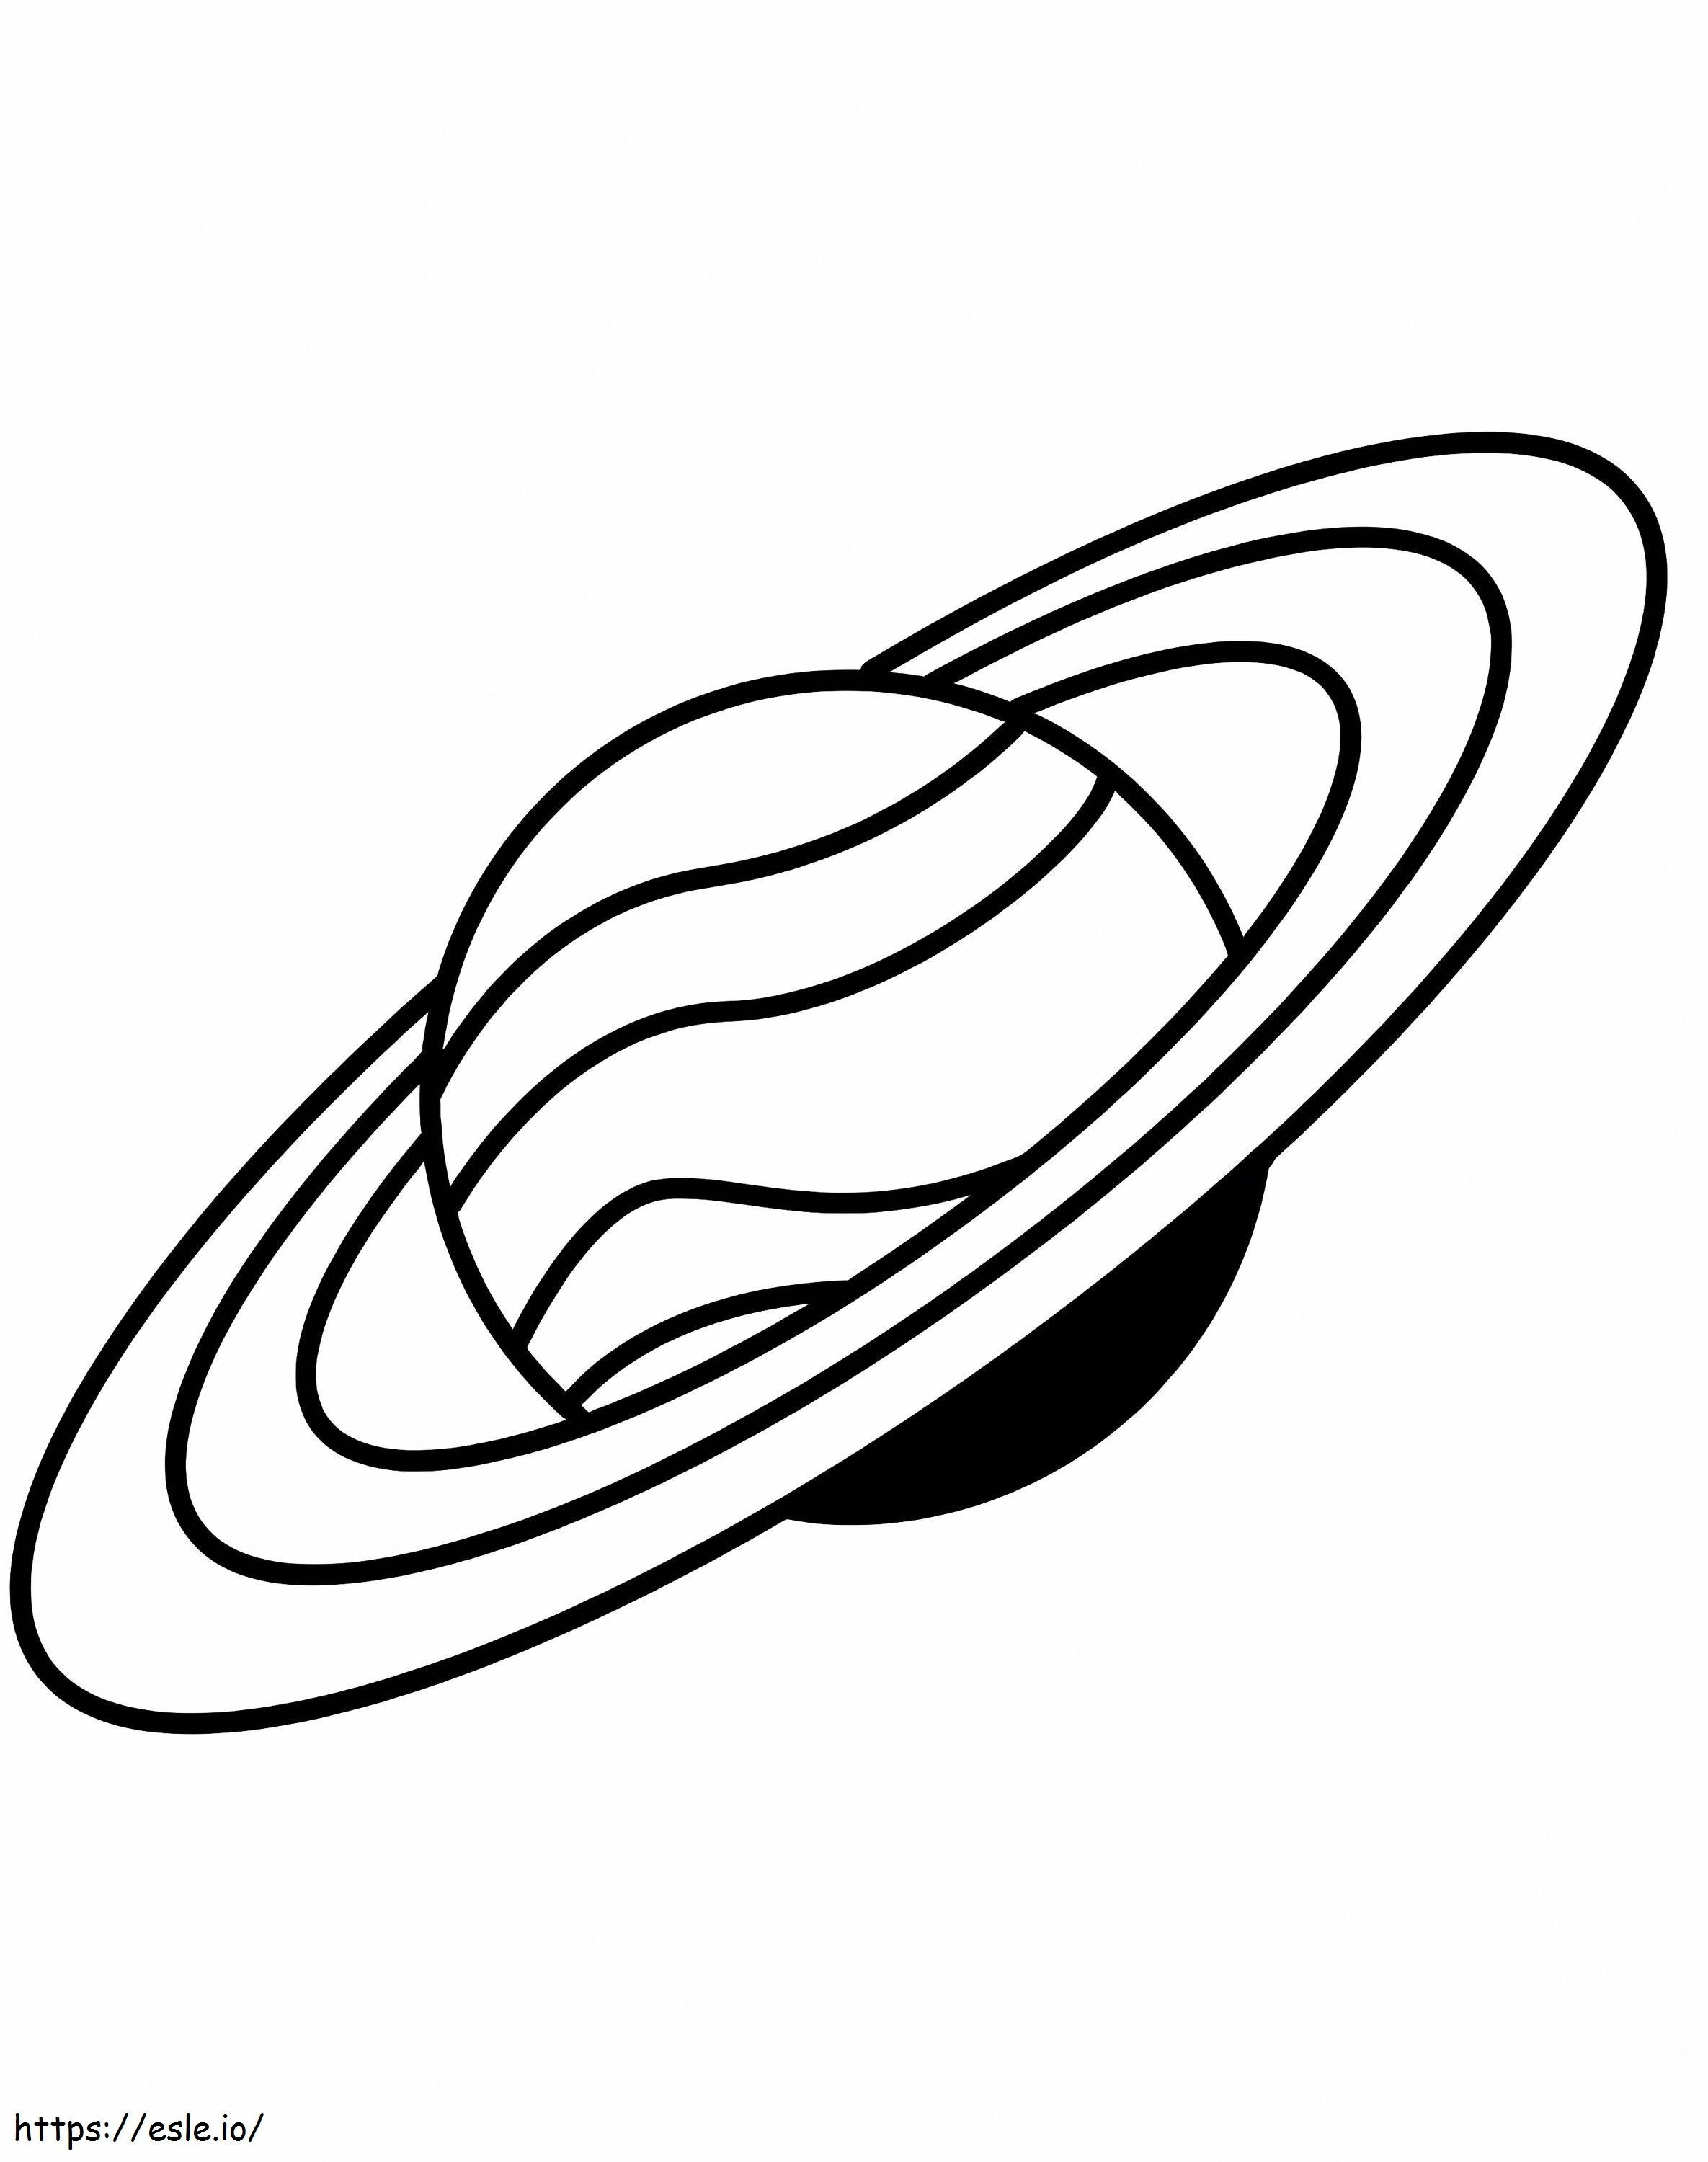 Einfacher Saturn 1 ausmalbilder